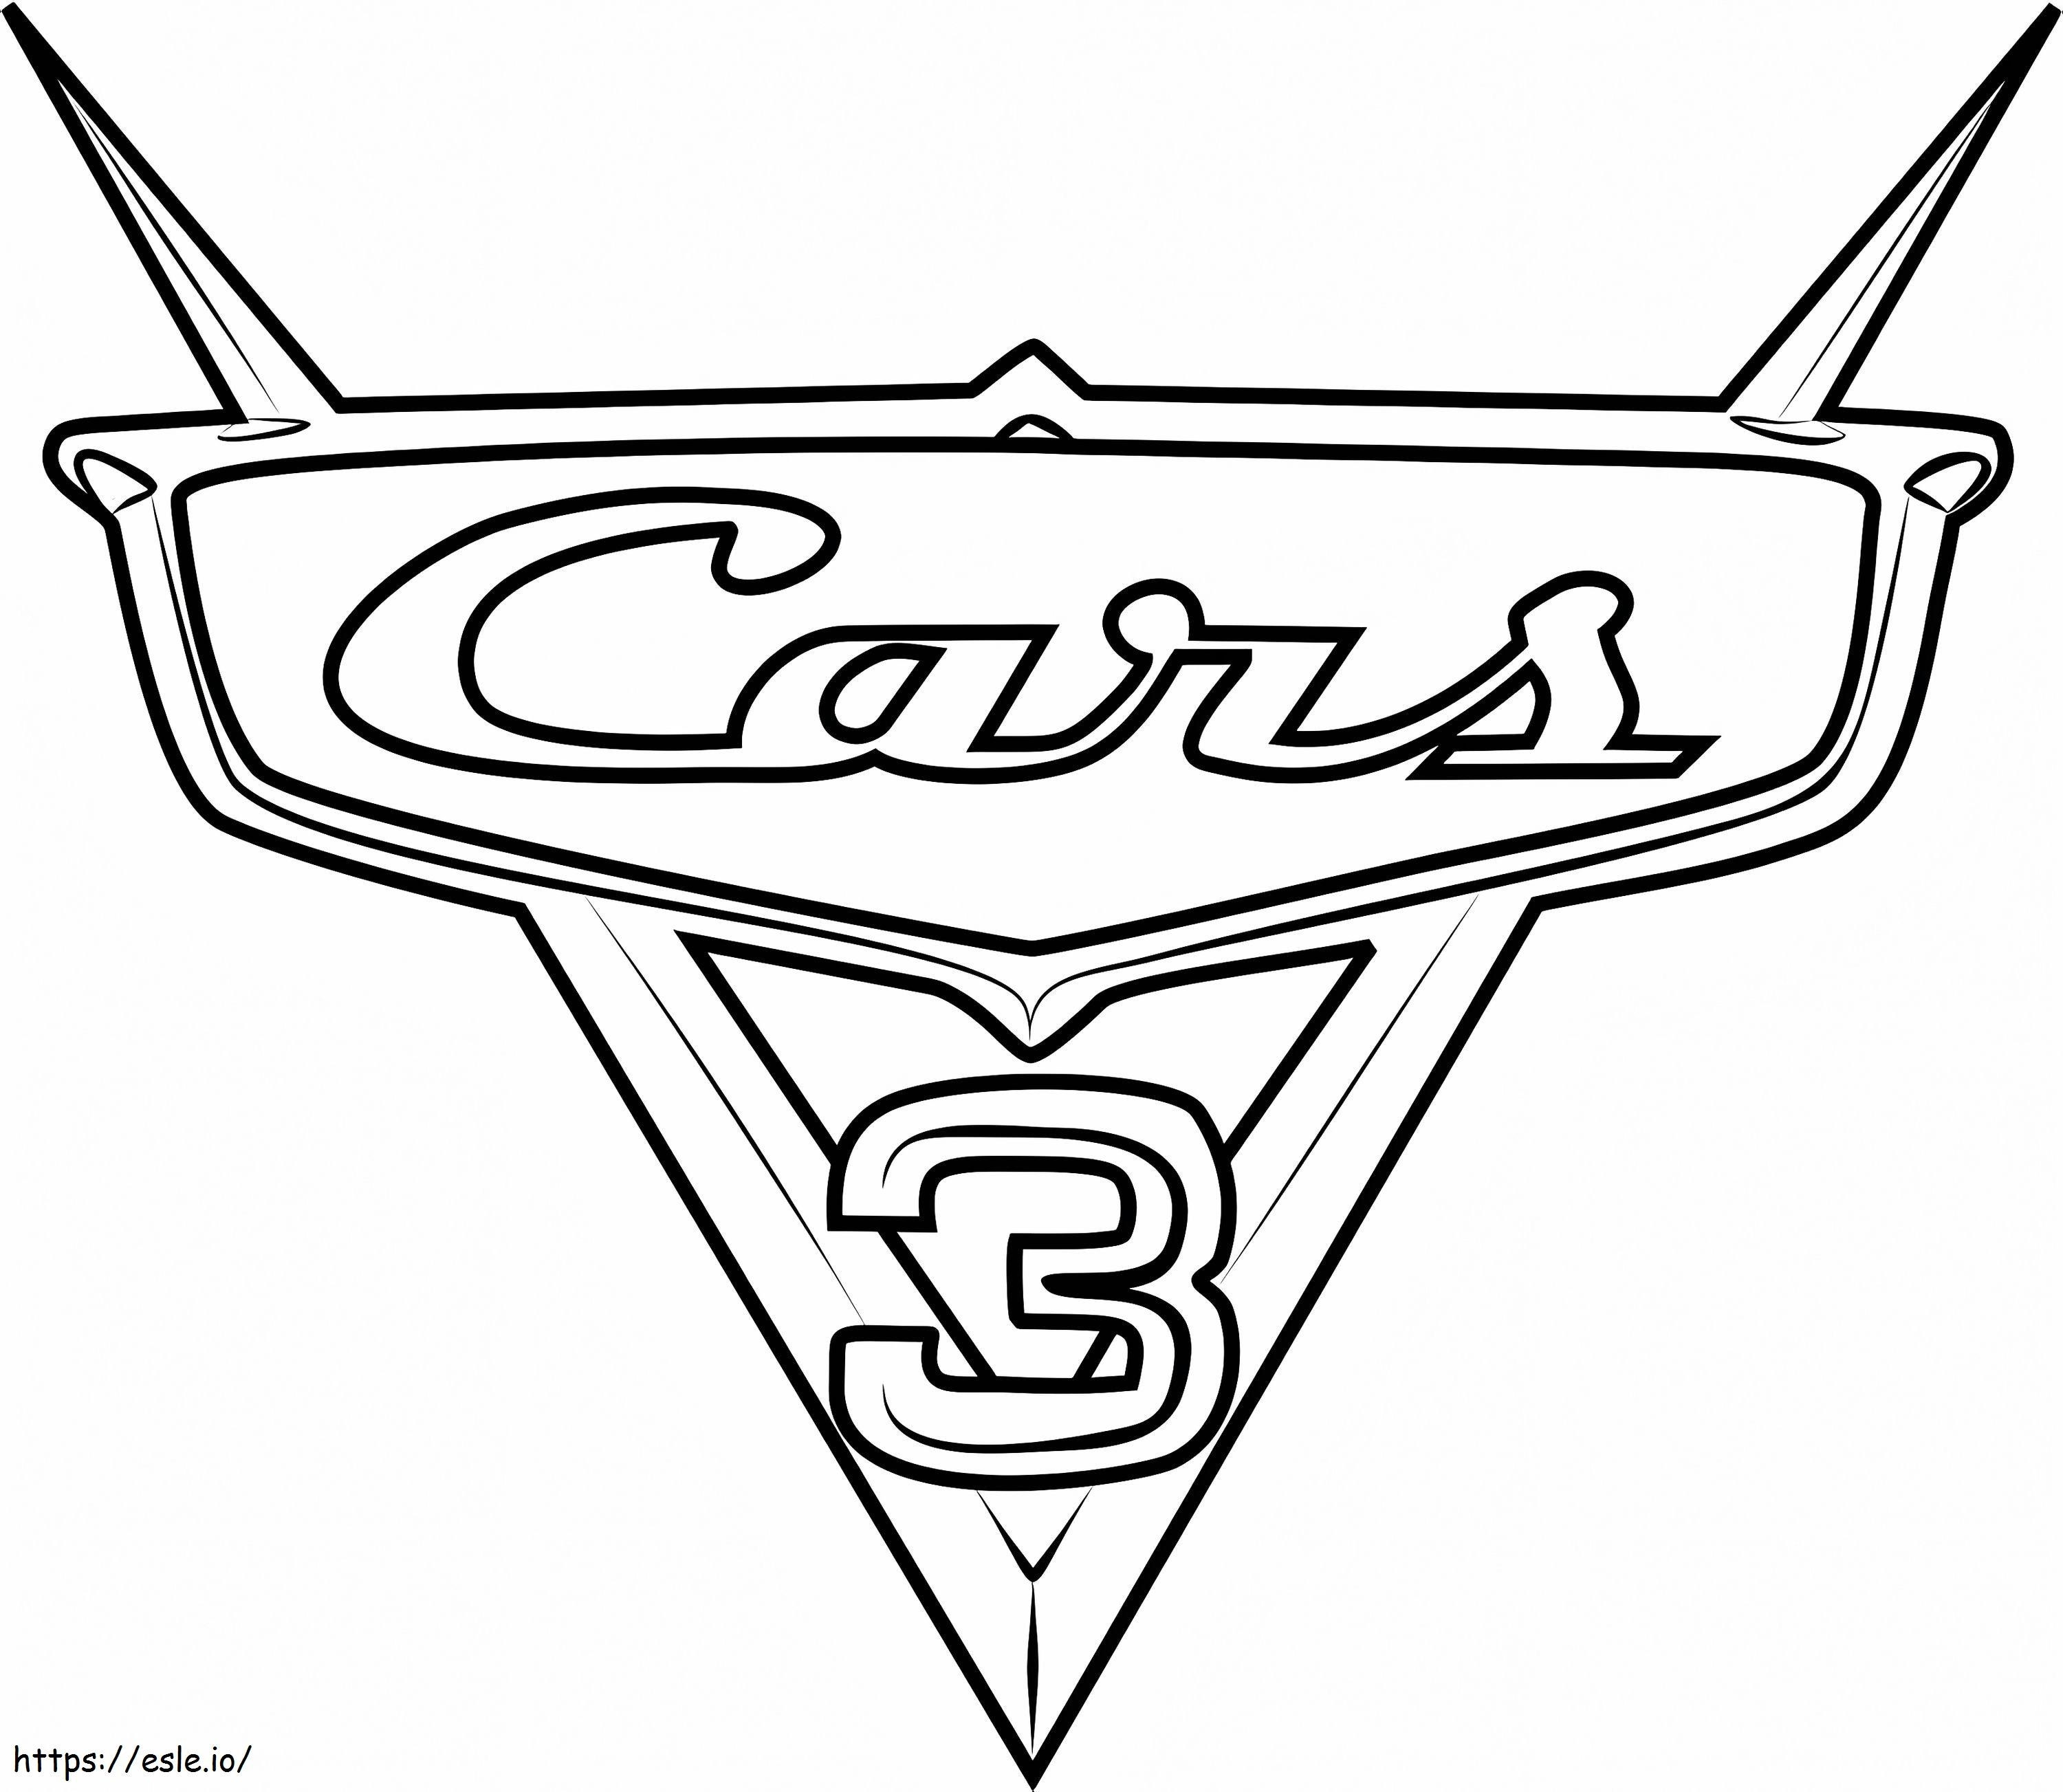  Cars 3 Logo From Cars 31 para colorir